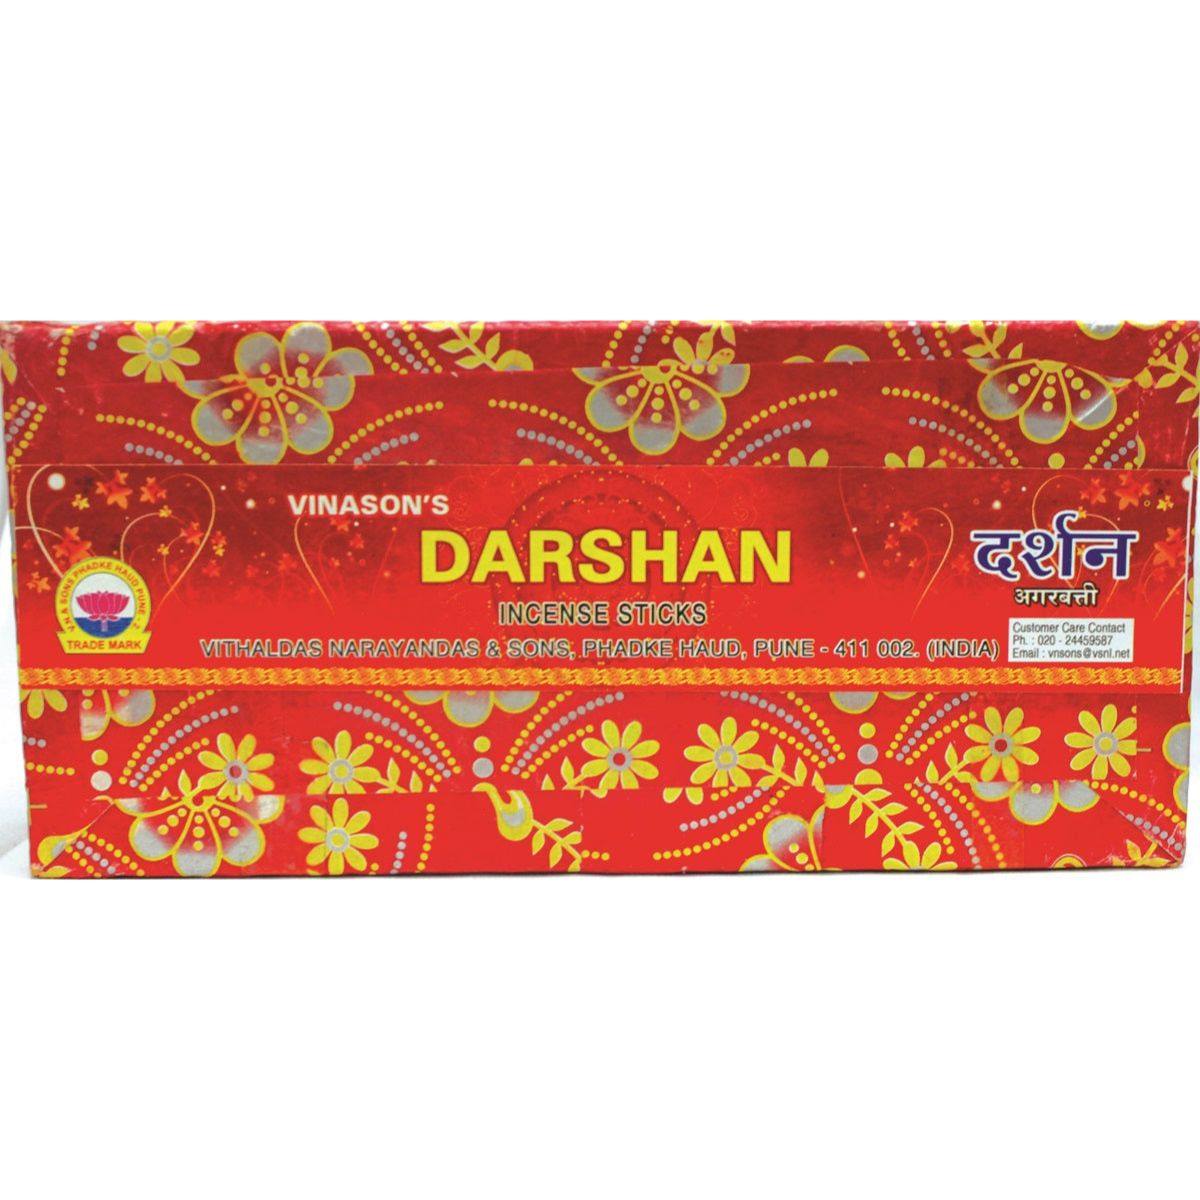 Vinason's - Darshan